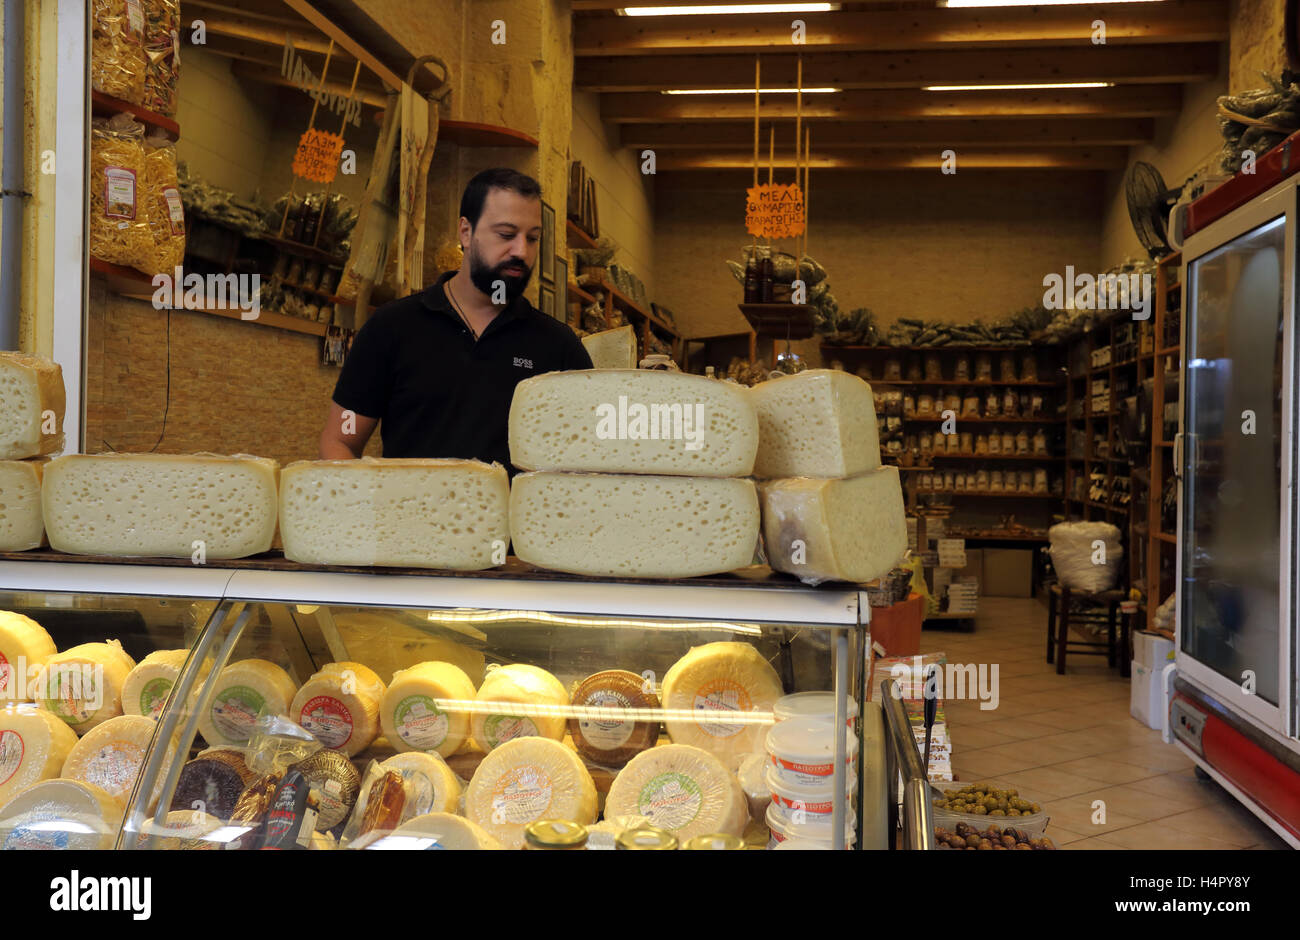 Boutique fromage traditionnel grec à Chania, Crète, du marché local de vente de fromages, miel, olives et autres produits, octobre 2016. Banque D'Images